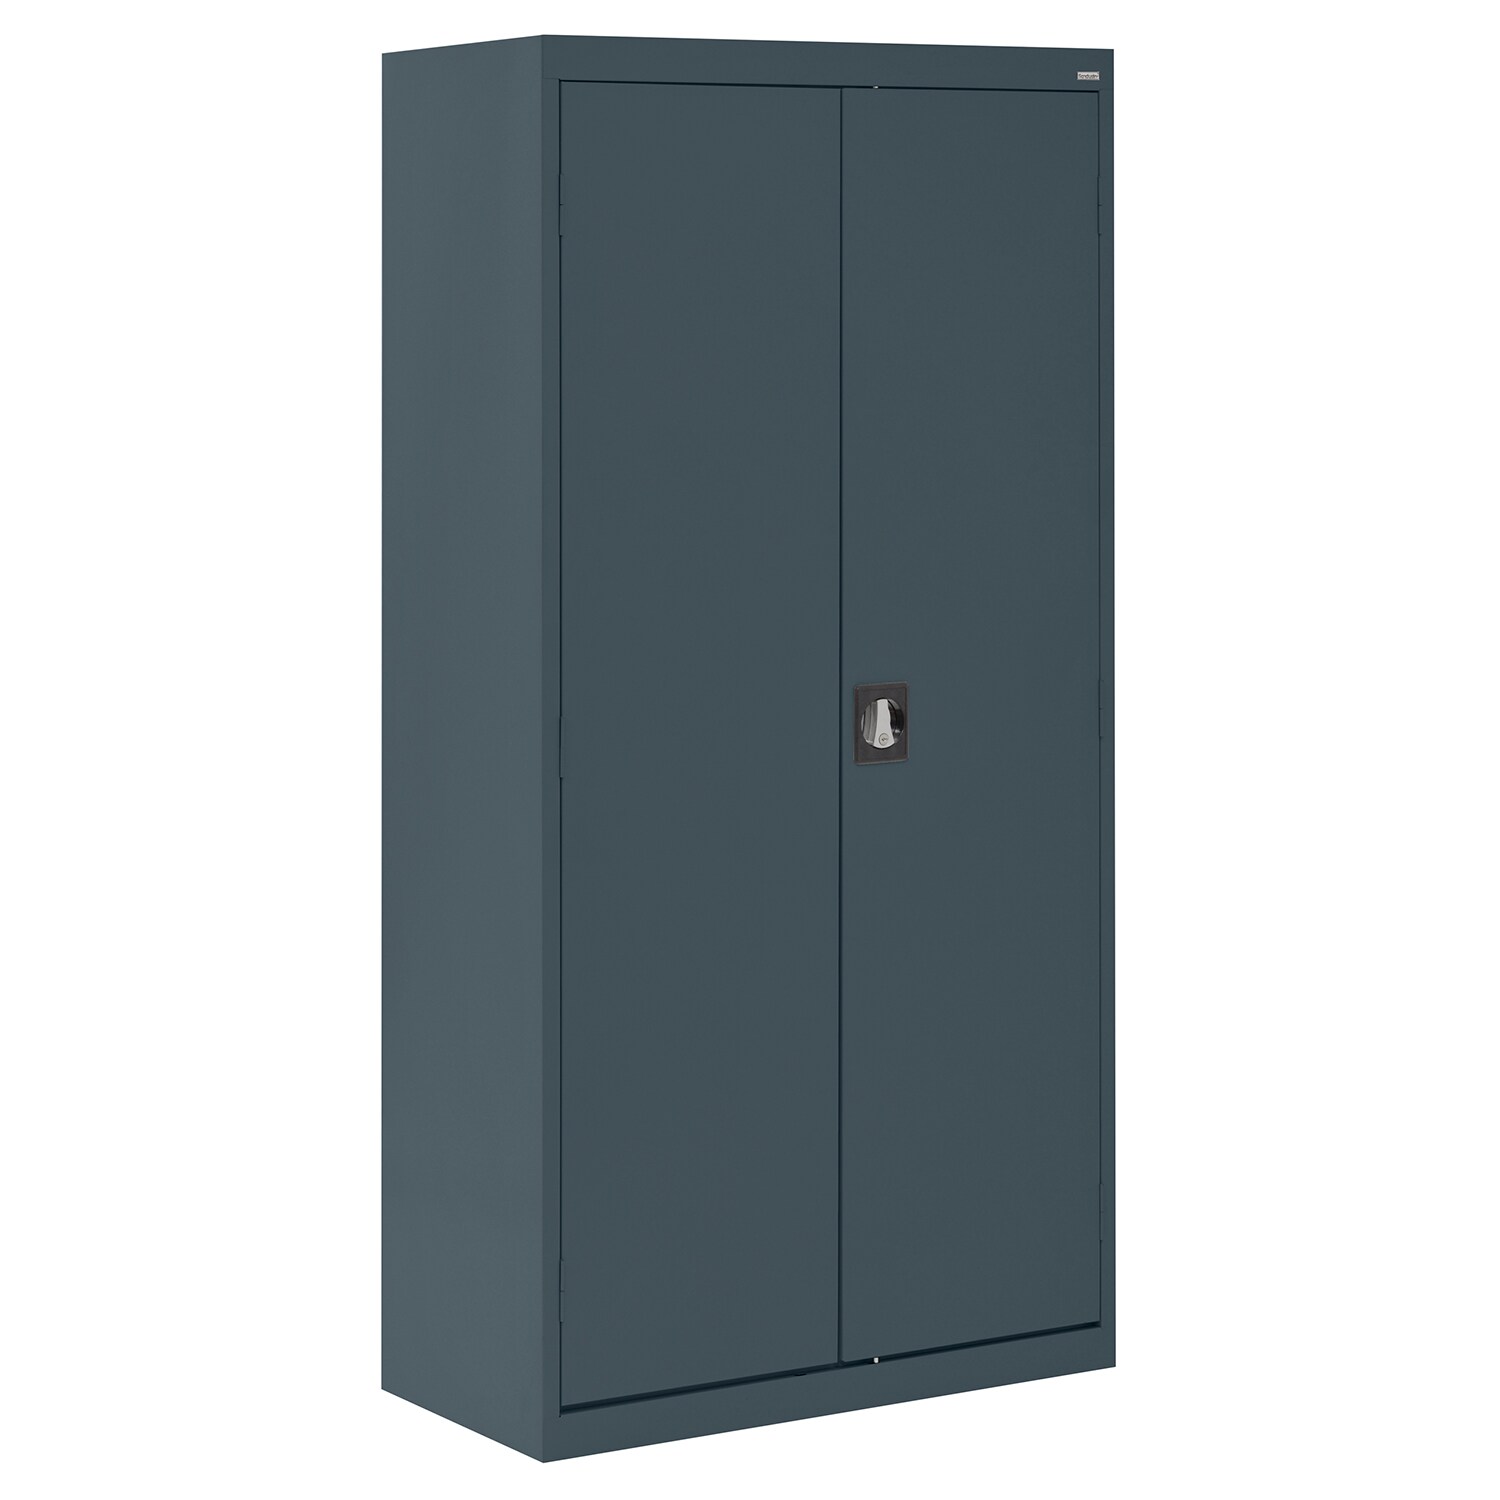 Steel Freestanding Garage Cabinet in Gray (36-in W x 72-in H x 24-in D) | - Sandusky EAWR362472-02